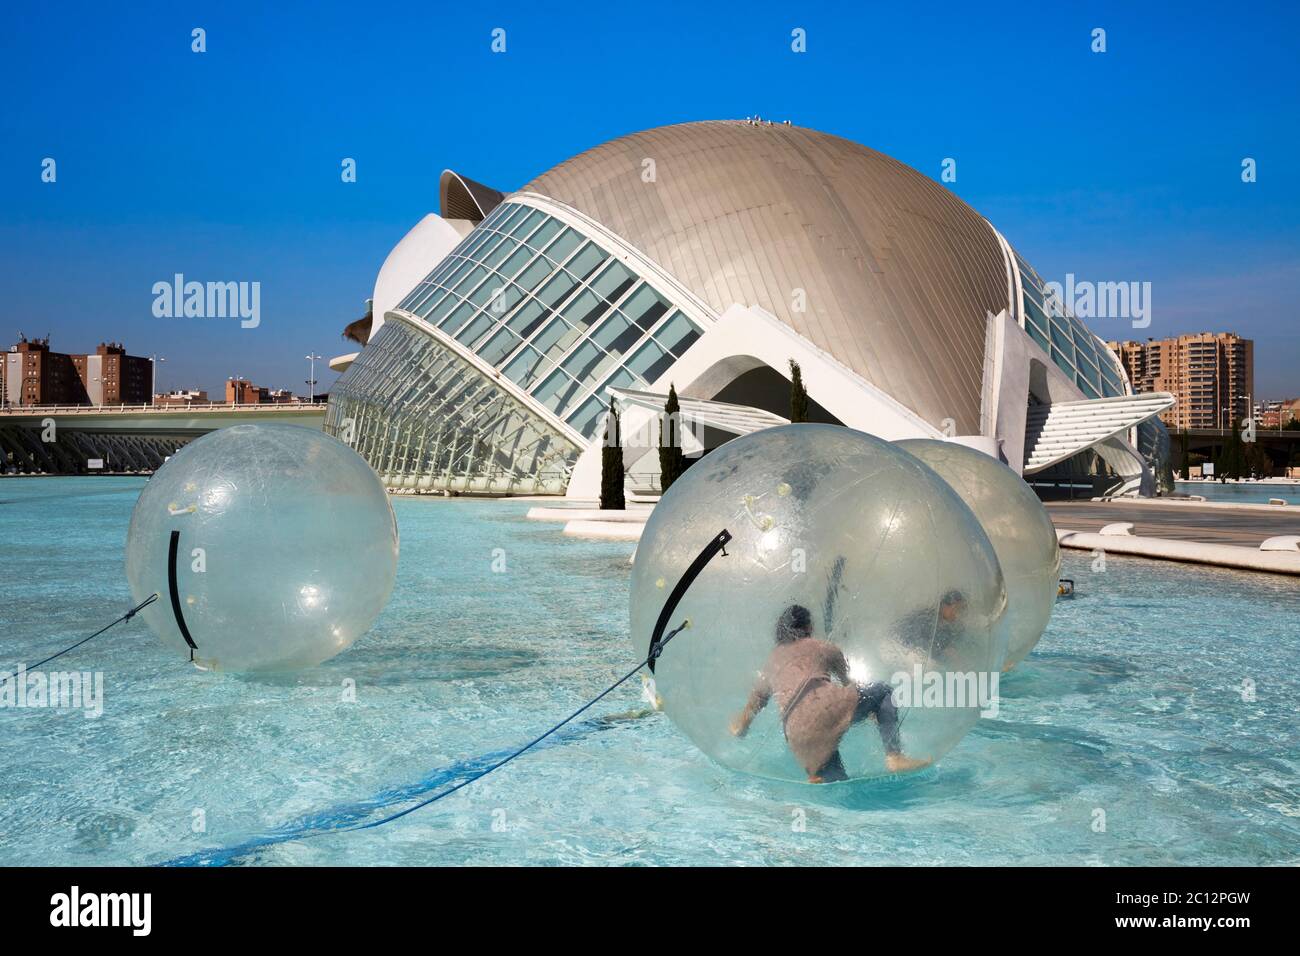 Turistas que se divierten en el interior de grandes esferas flotantes transparentes en el parque de la ciencia, Valencia, España. Foto de stock